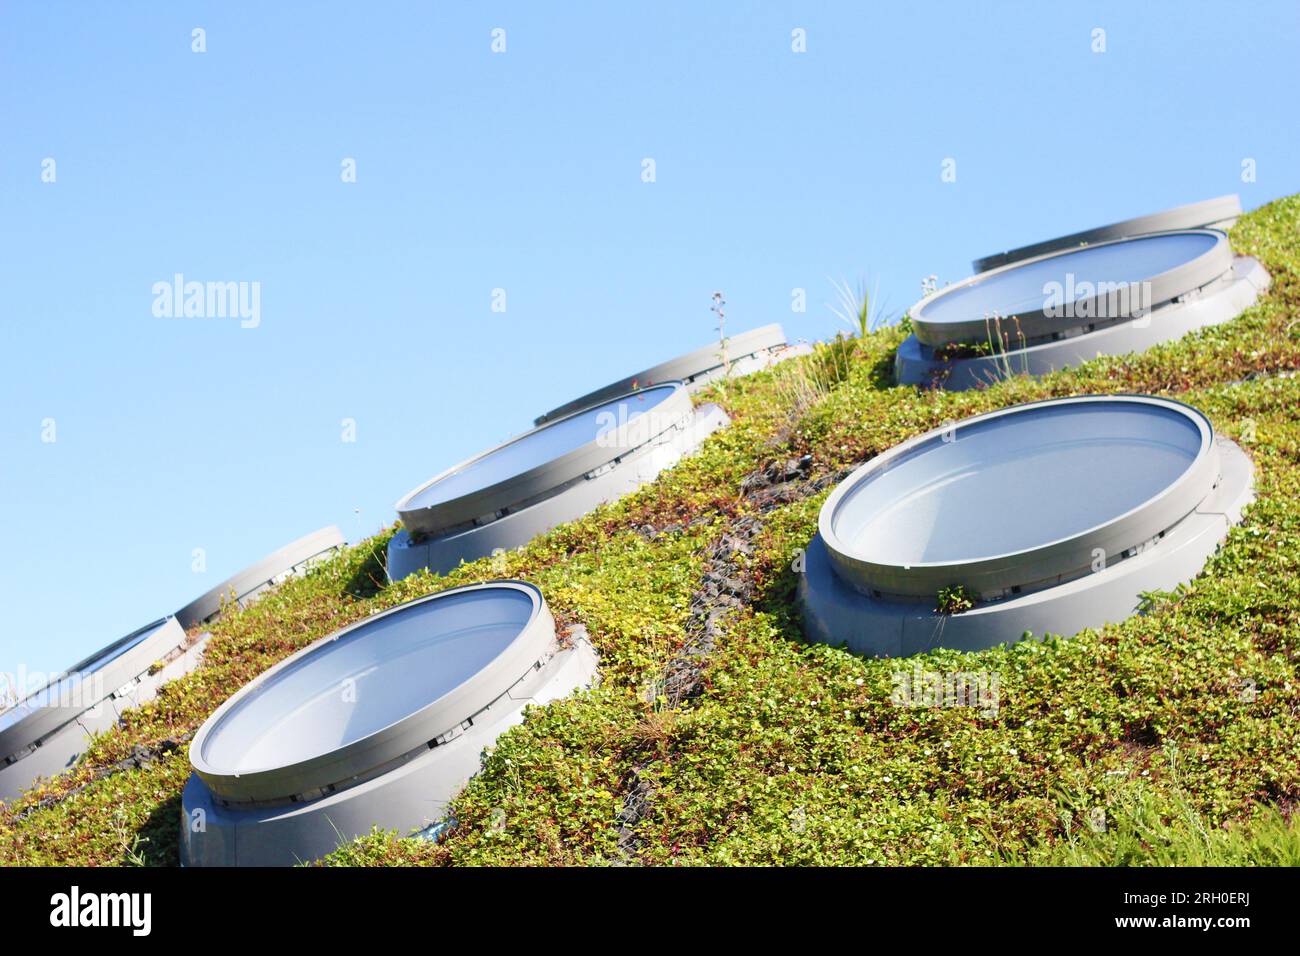 lucernari di forma circolare su una superficie ondulata di erba, sullo sfondo il cielo azzurro. Architettura moderna sostenibile, architettura aco, b Foto Stock